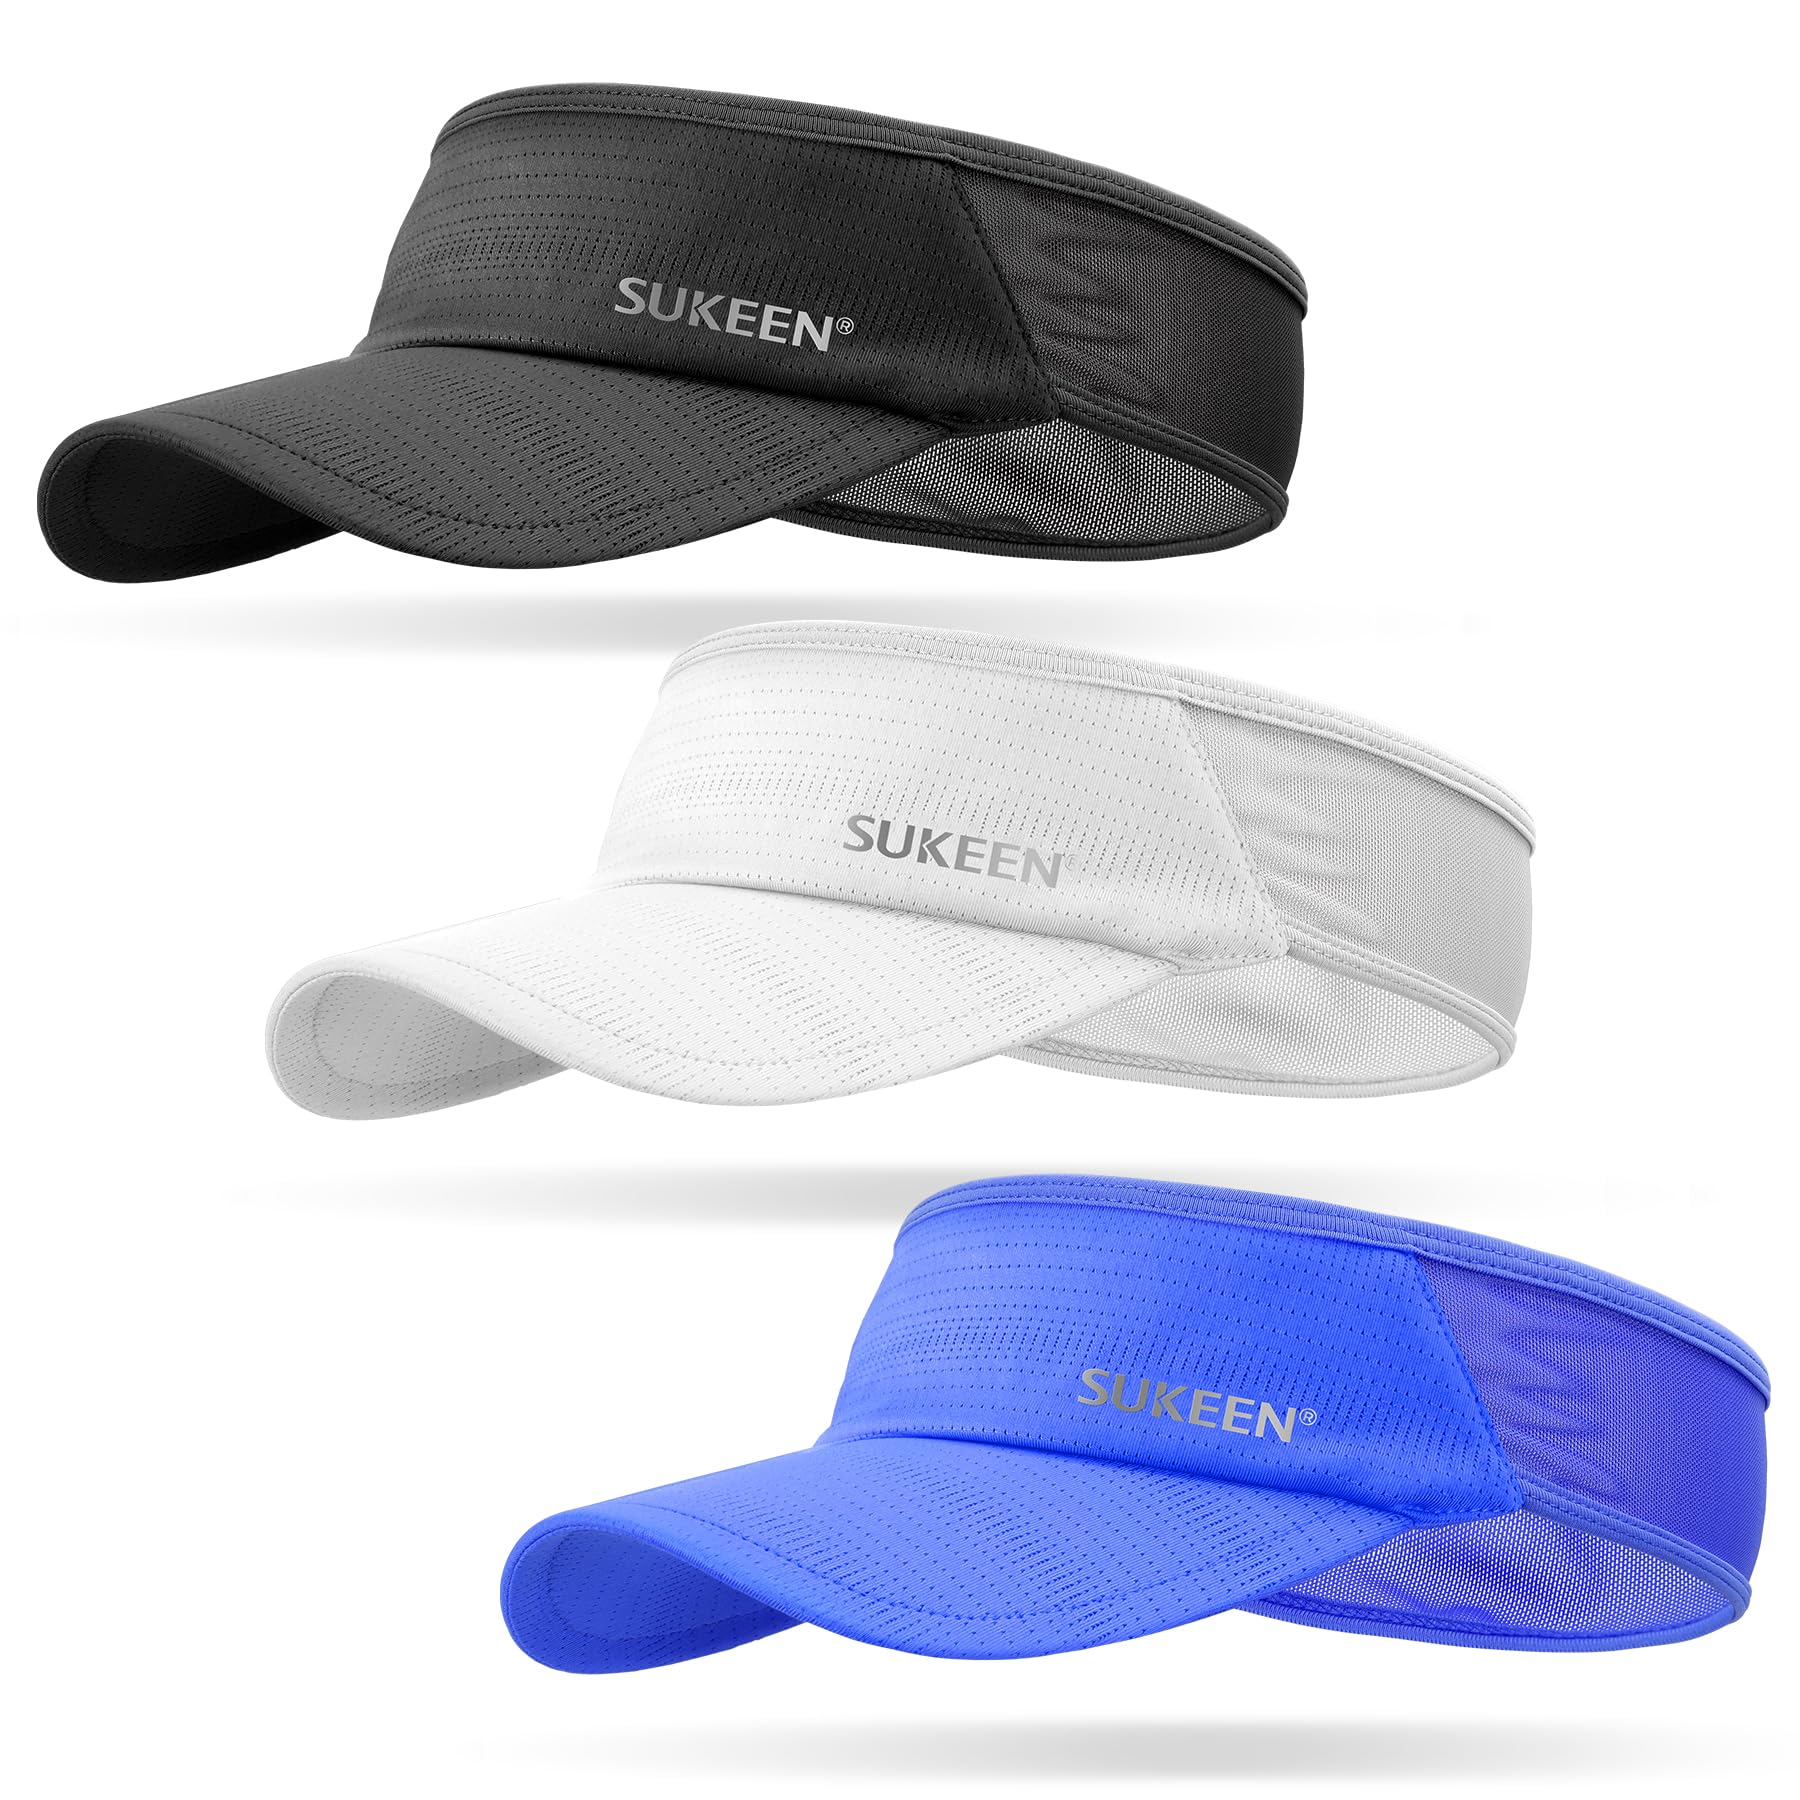 Sukeen 3 Pack Sports Sun Visor Men Women Lightweight Packable Cooling Stretchy Visor Hat for Running, Tennis, Golf, Daily Wear